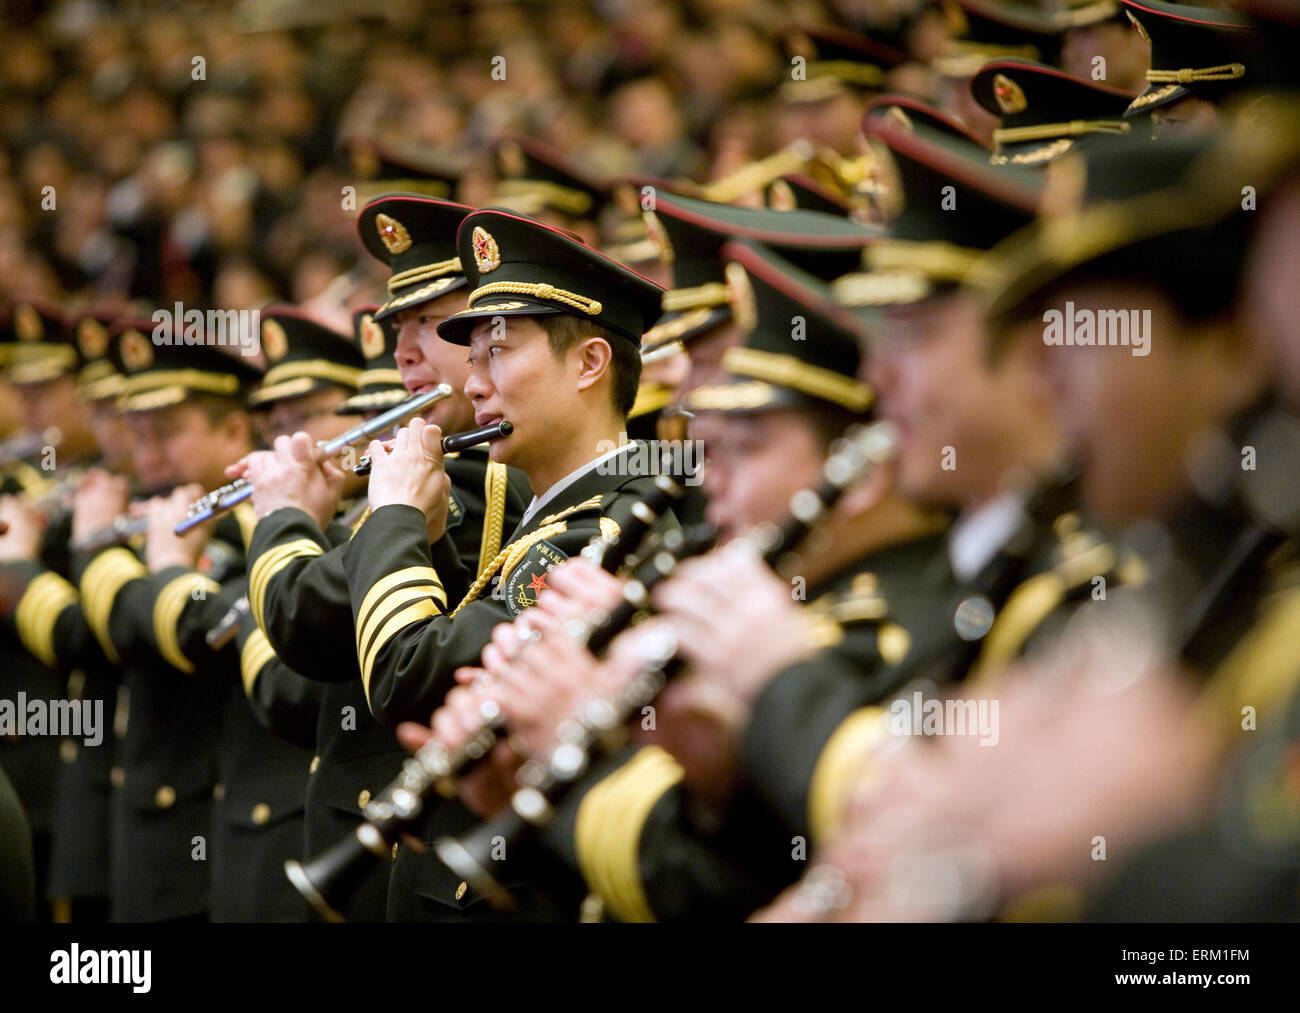 Banda militar chino desempeña el himno nacional en el Gran Salón del Pueblo en Beijing, China. Foto de stock